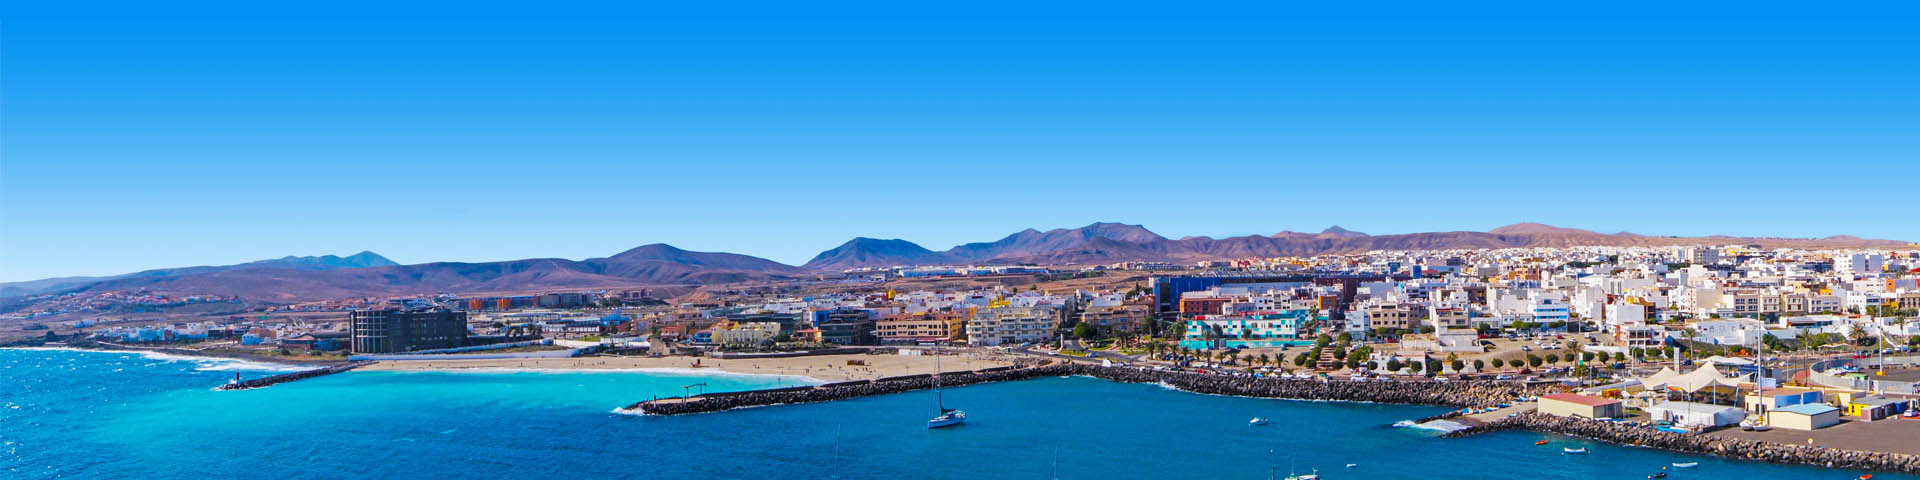 KPrachtige strand met blauwe zee en uitkijkend over een dorp en bergen op de Canarische Eilanden.